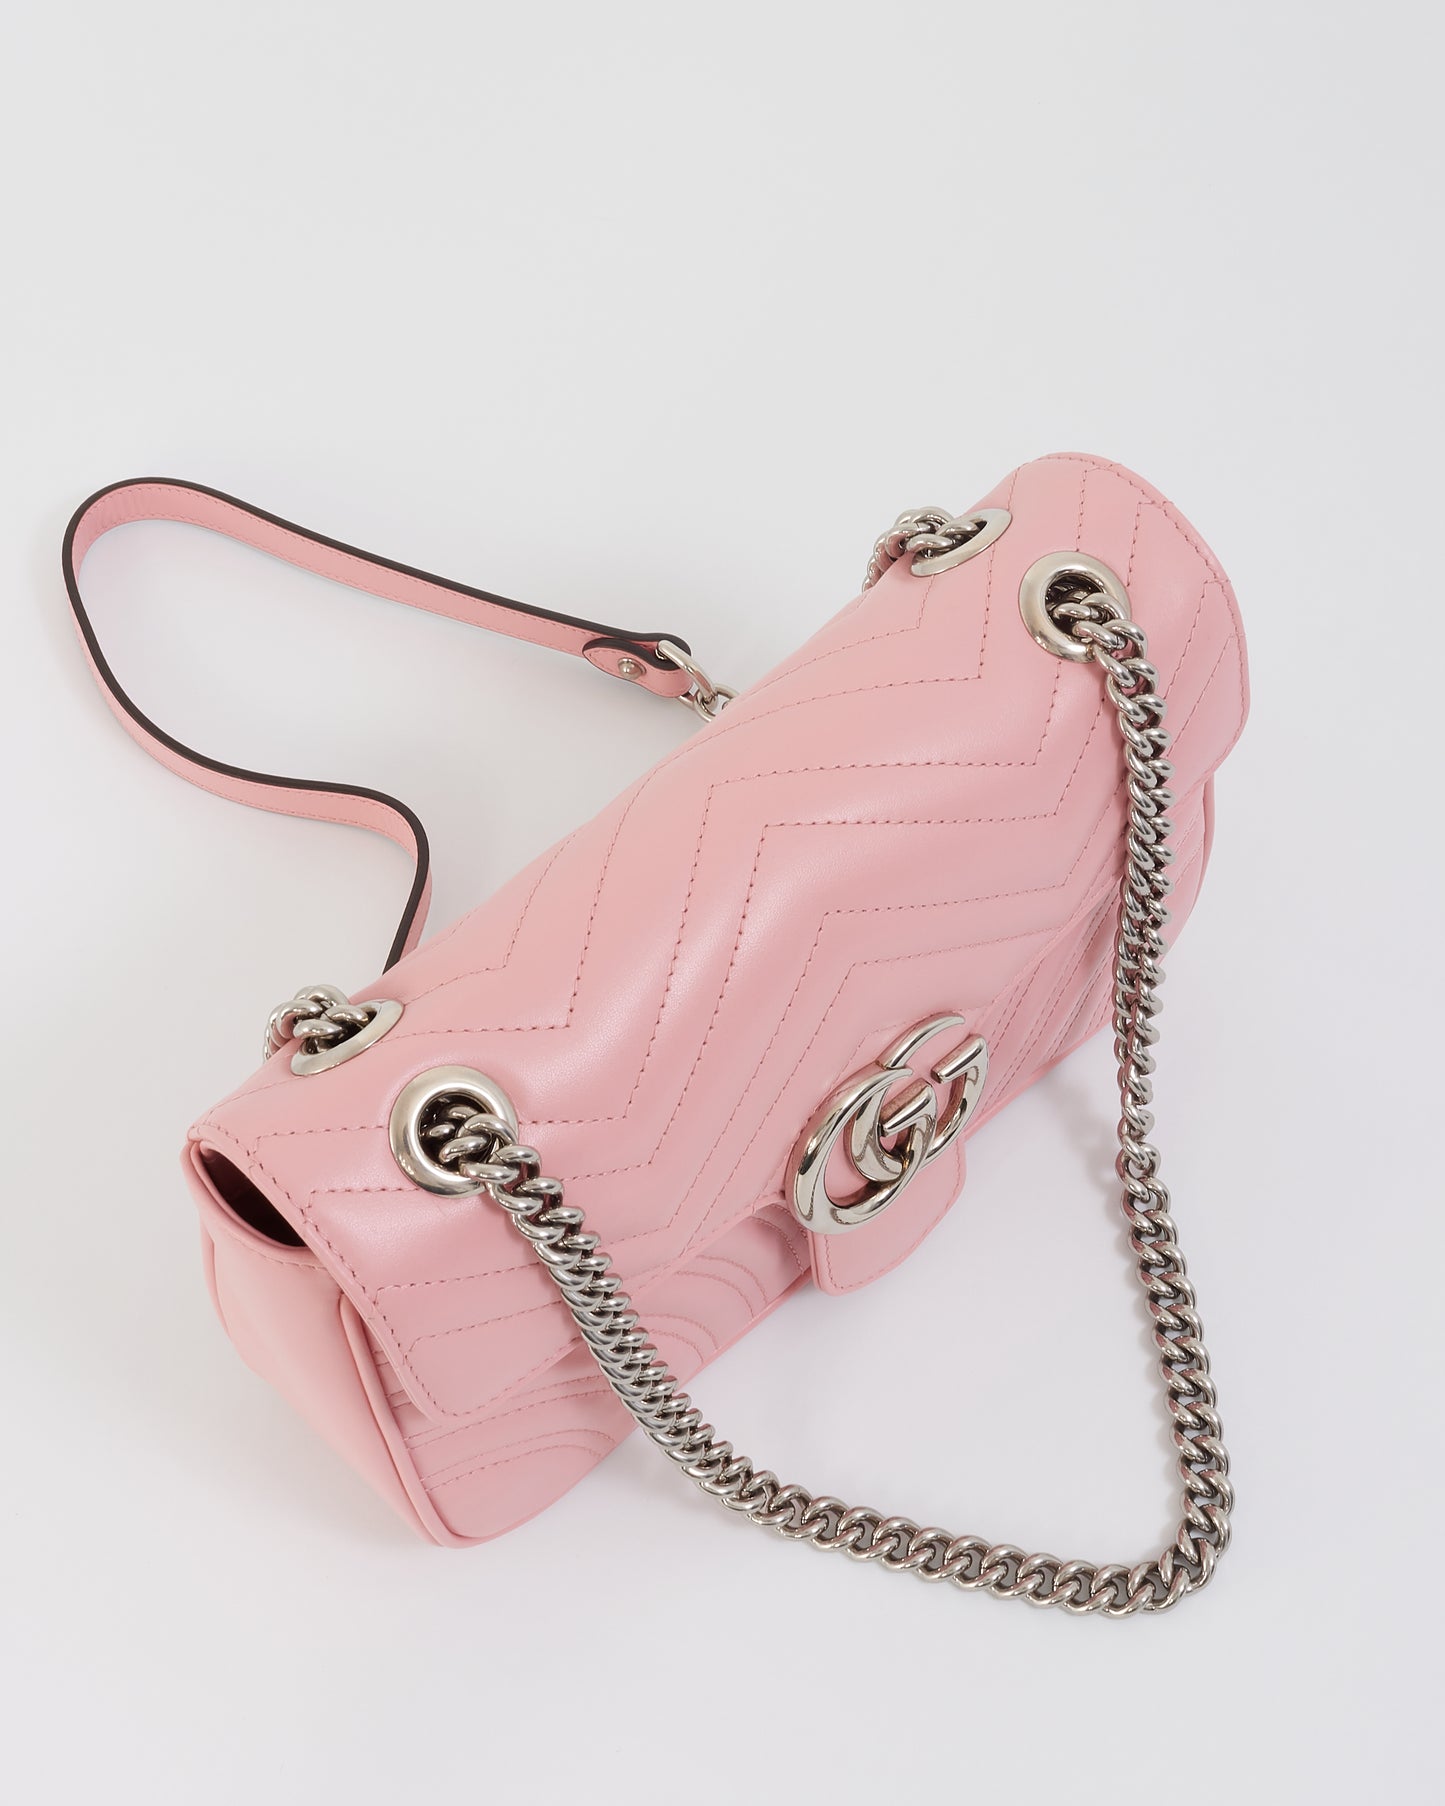 Petit sac à bandoulière GG Marmont en cuir matelassé rose Gucci